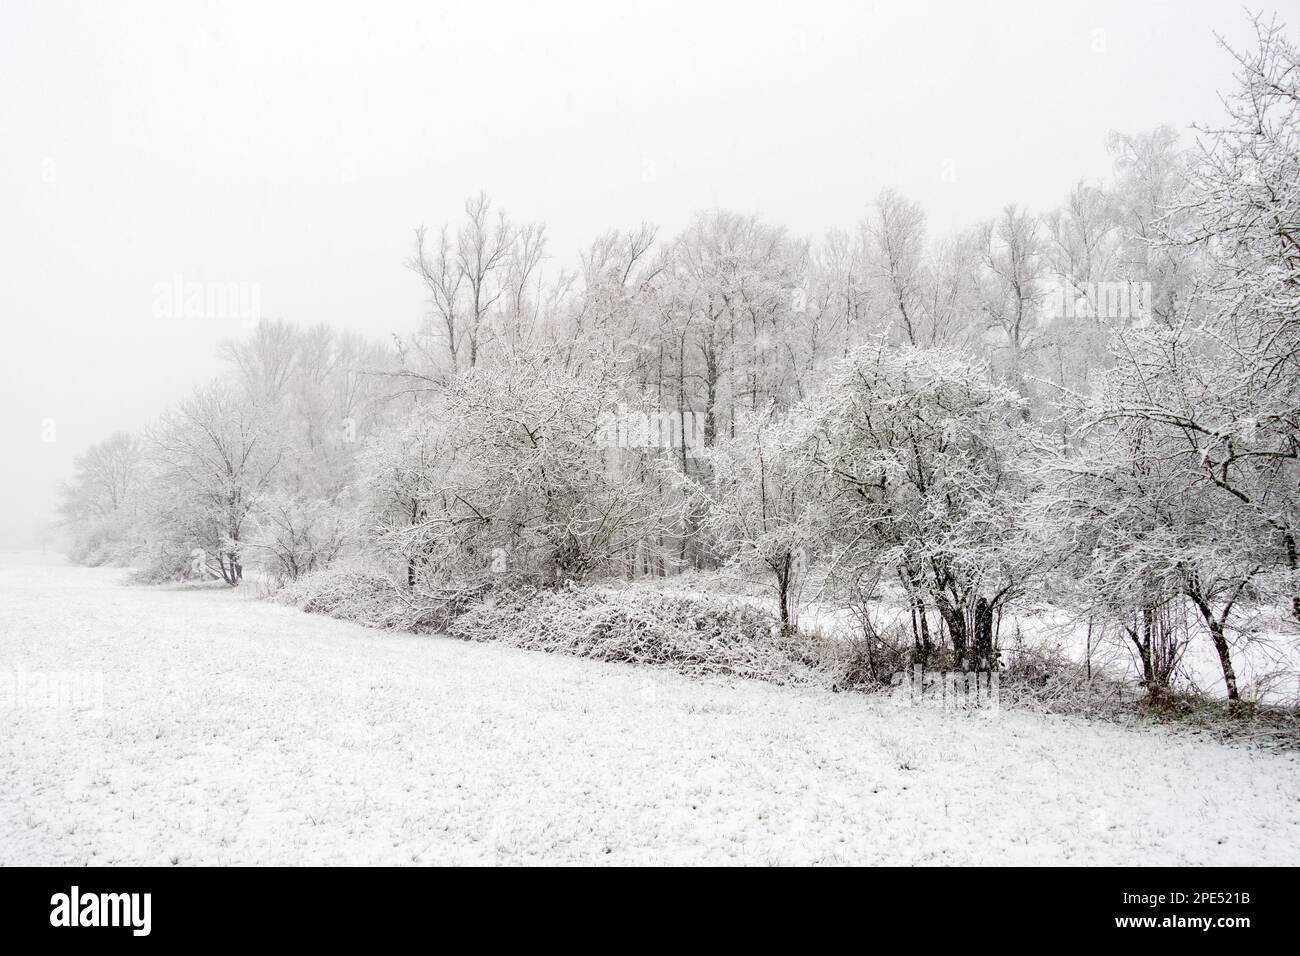 Inizio dell'inverno a Meerbusch, Renania settentrionale-Vestfalia, Germania. Forte nevicata in una riserva naturale, Ilvericher Altrheinschlinge vicino a Düsseldorf. Foto Stock